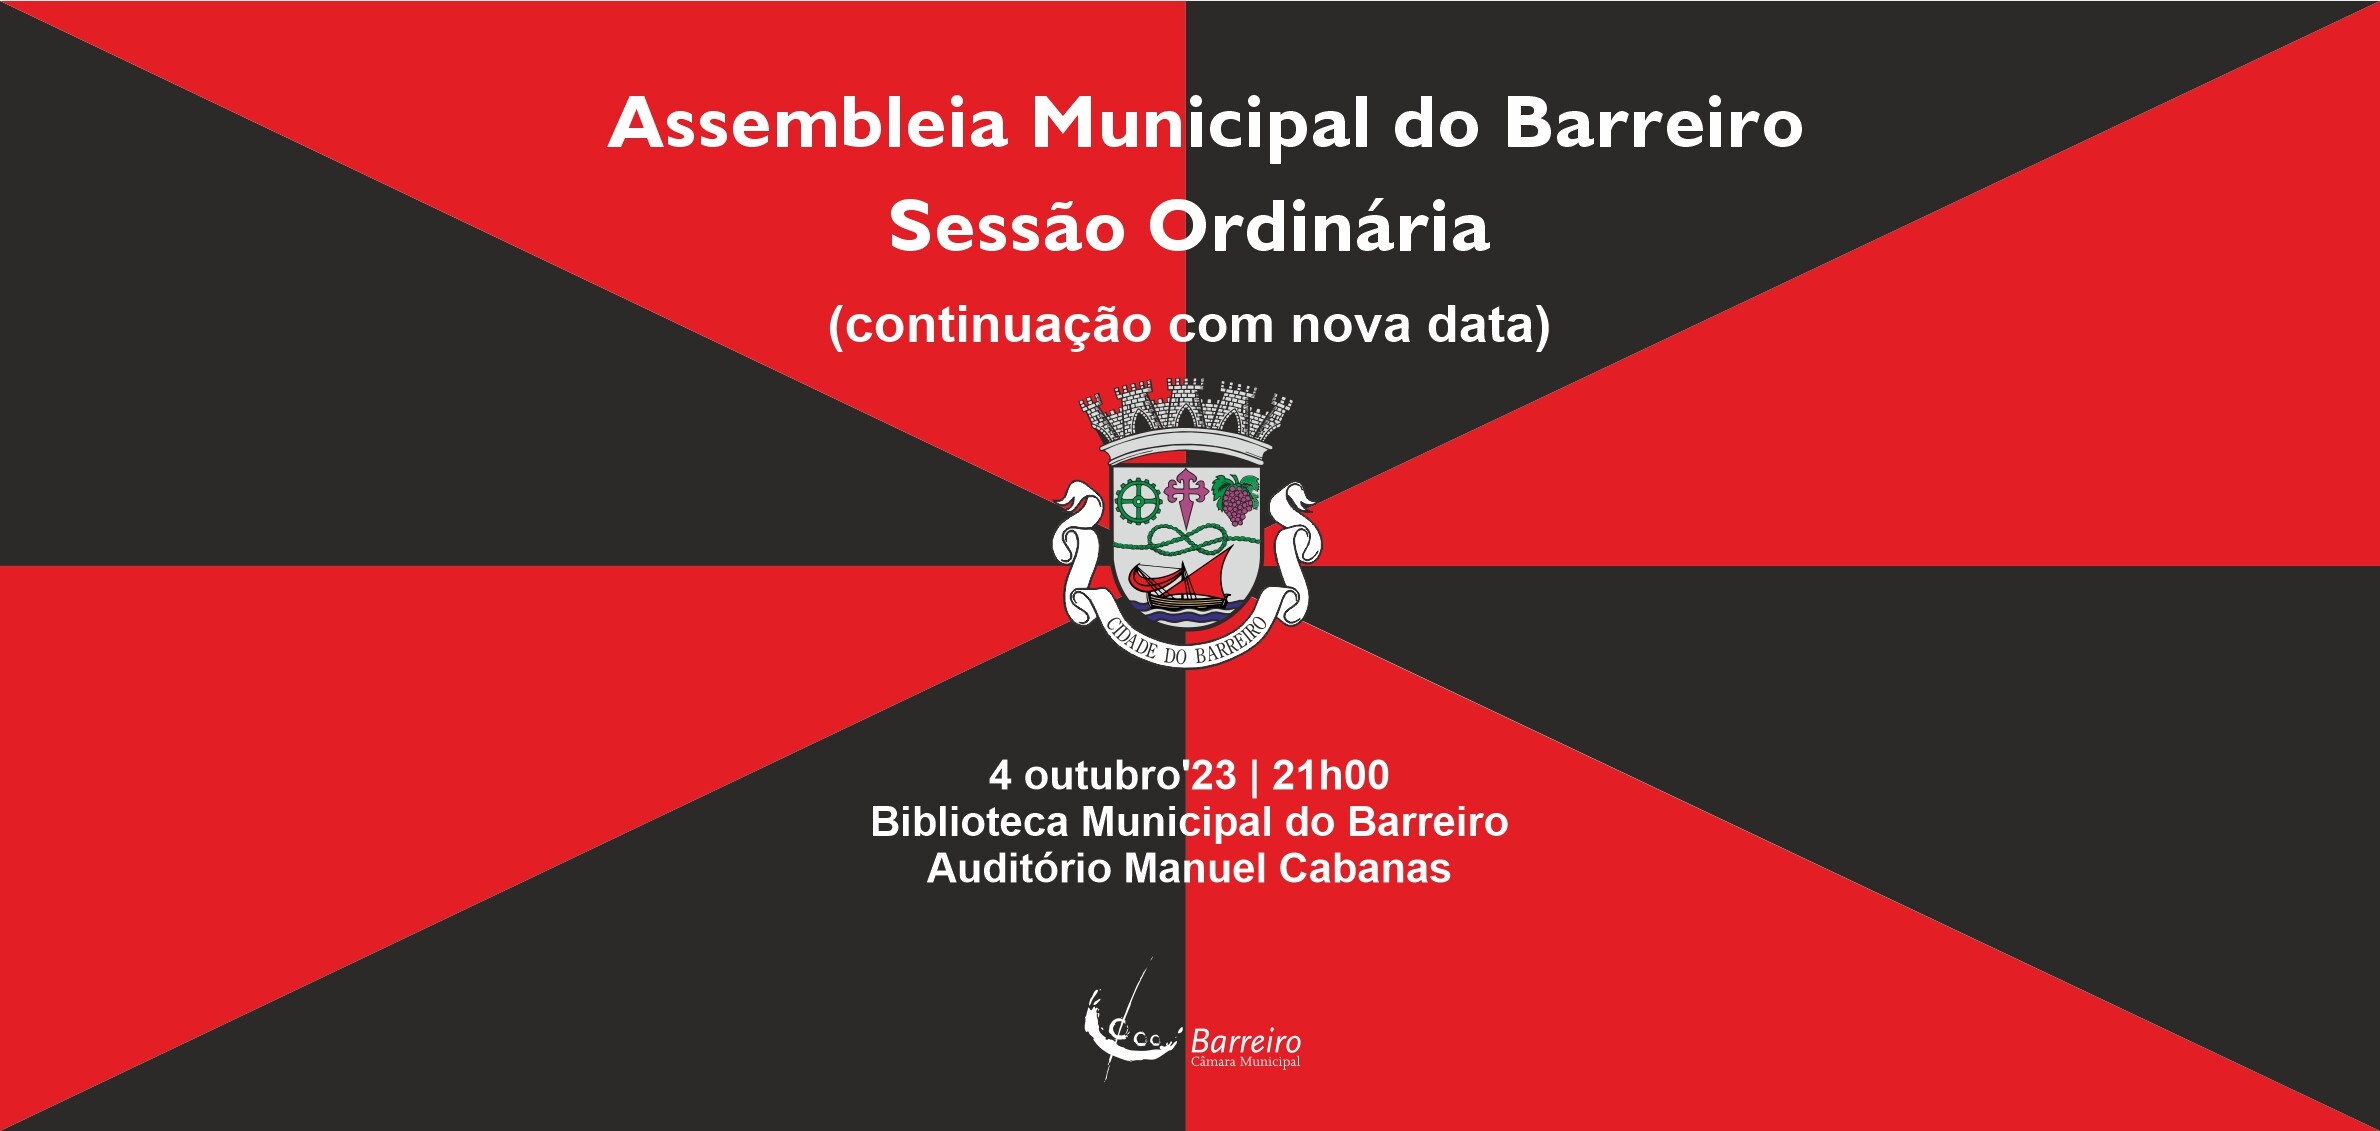 Assembleia Municipal do Barreiro | Sessão Ordinária a 4 de outubro (nova data)